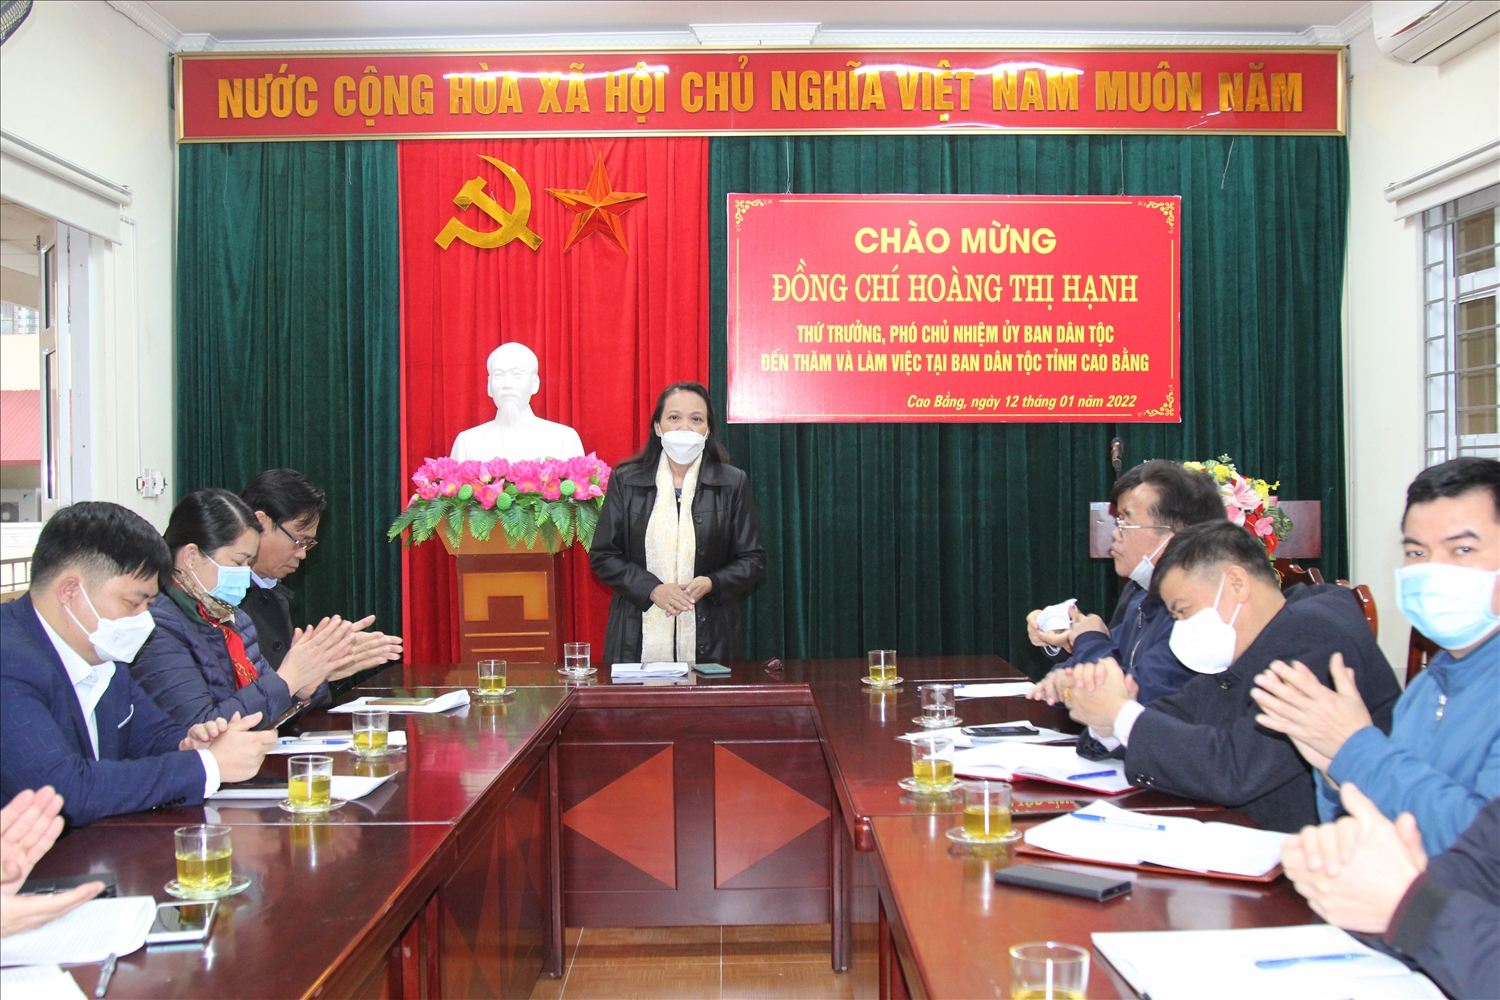 Thứ trưởng, Phó Chủ nhiệm Hoàng Thị Hạnh thăm và làm việc với Ban Dân tộc tỉnh Cao Bằng